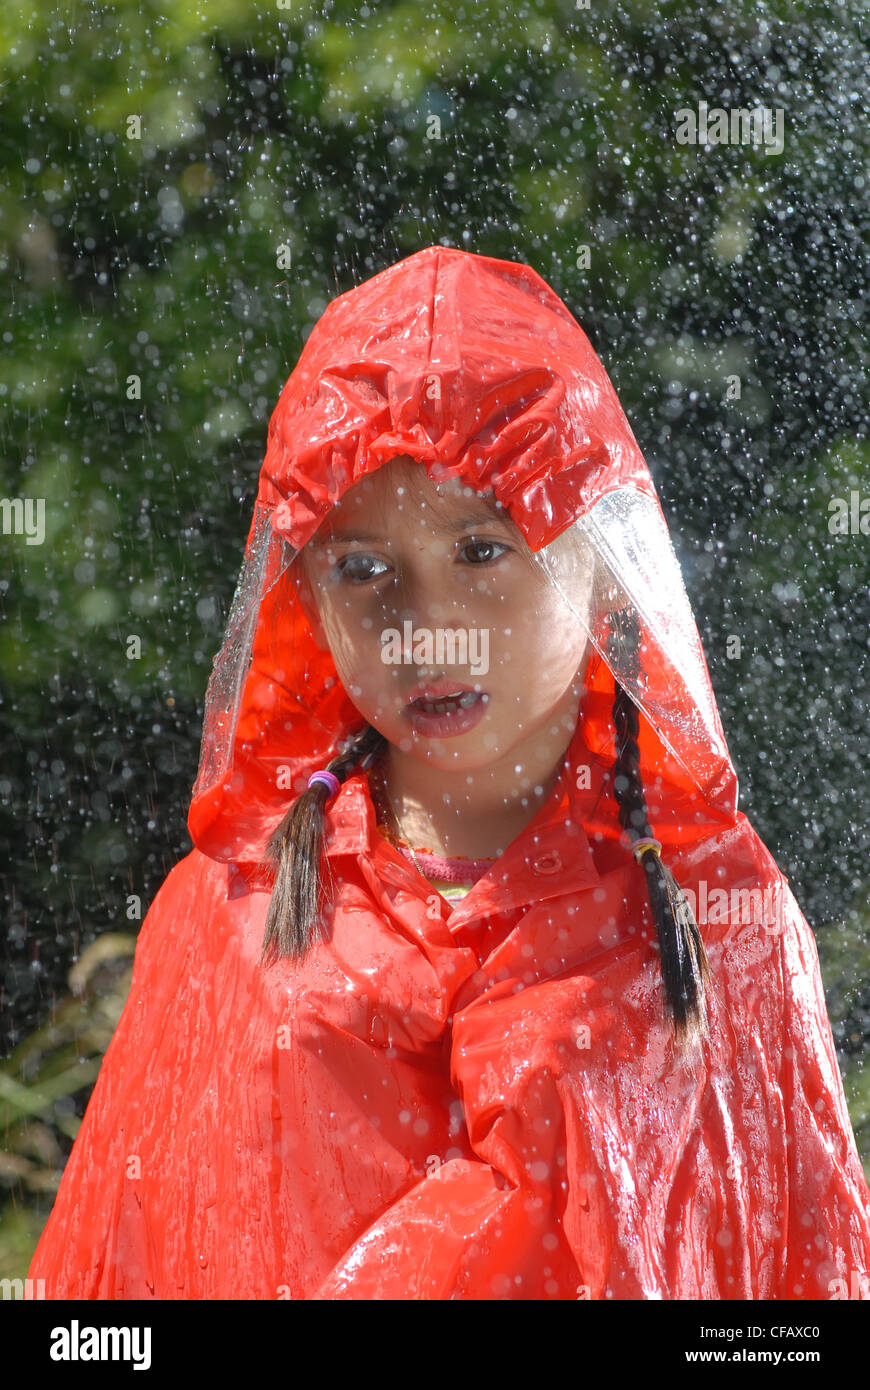 Regen, Nässe, Wasser, Herbst, Herbst, Kind, Mädchen, Orange, Wetter, Regenschutz Stockfoto